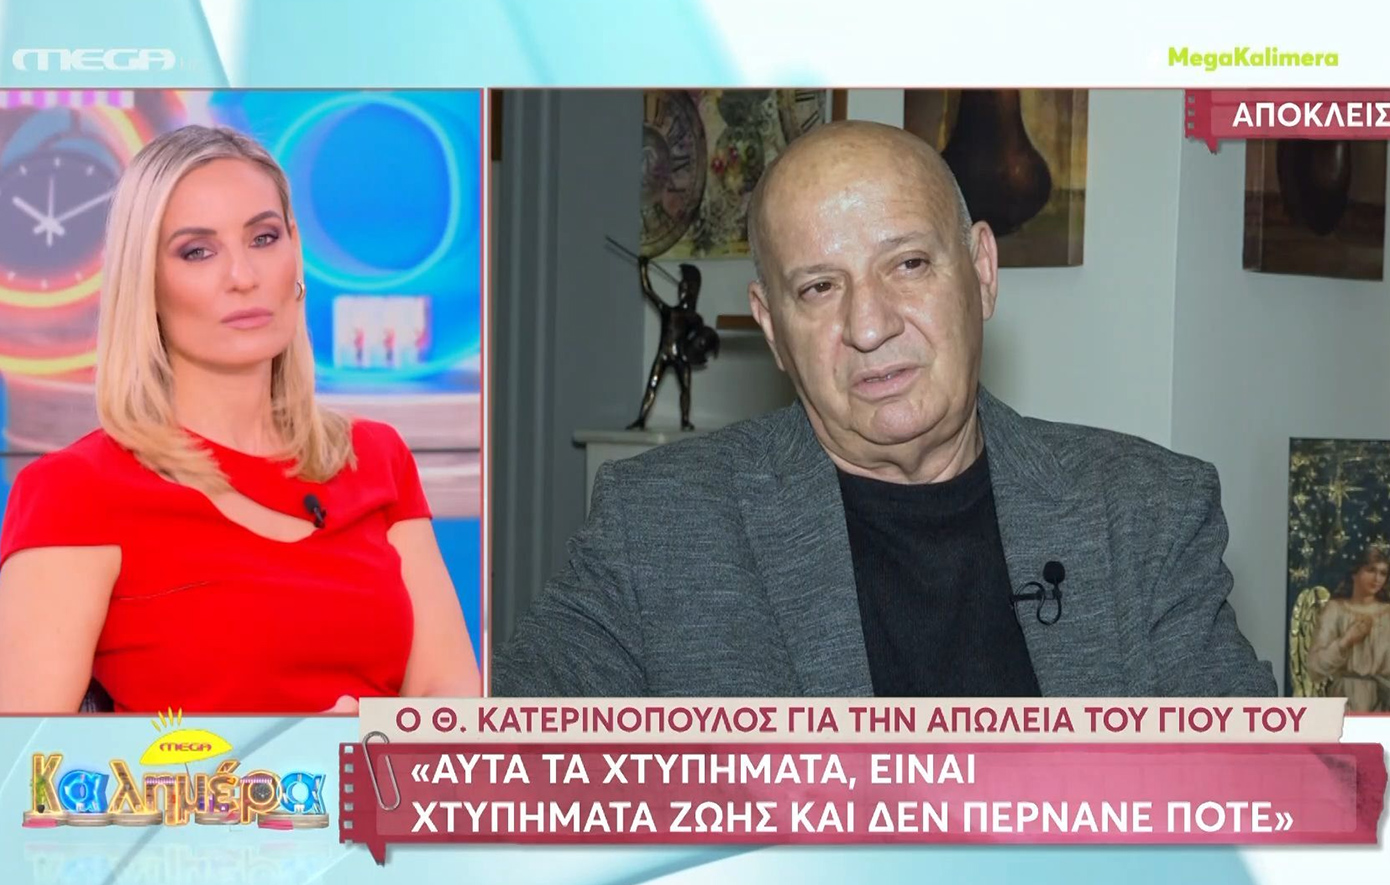 Ο Θανάσης Κατερινόπουλος μίλησε για τον θάνατο του γιου του &#8211; «Τρελαίνομαι όταν βλέπω μάνες να σκοτώνουν τα παιδιά τους»